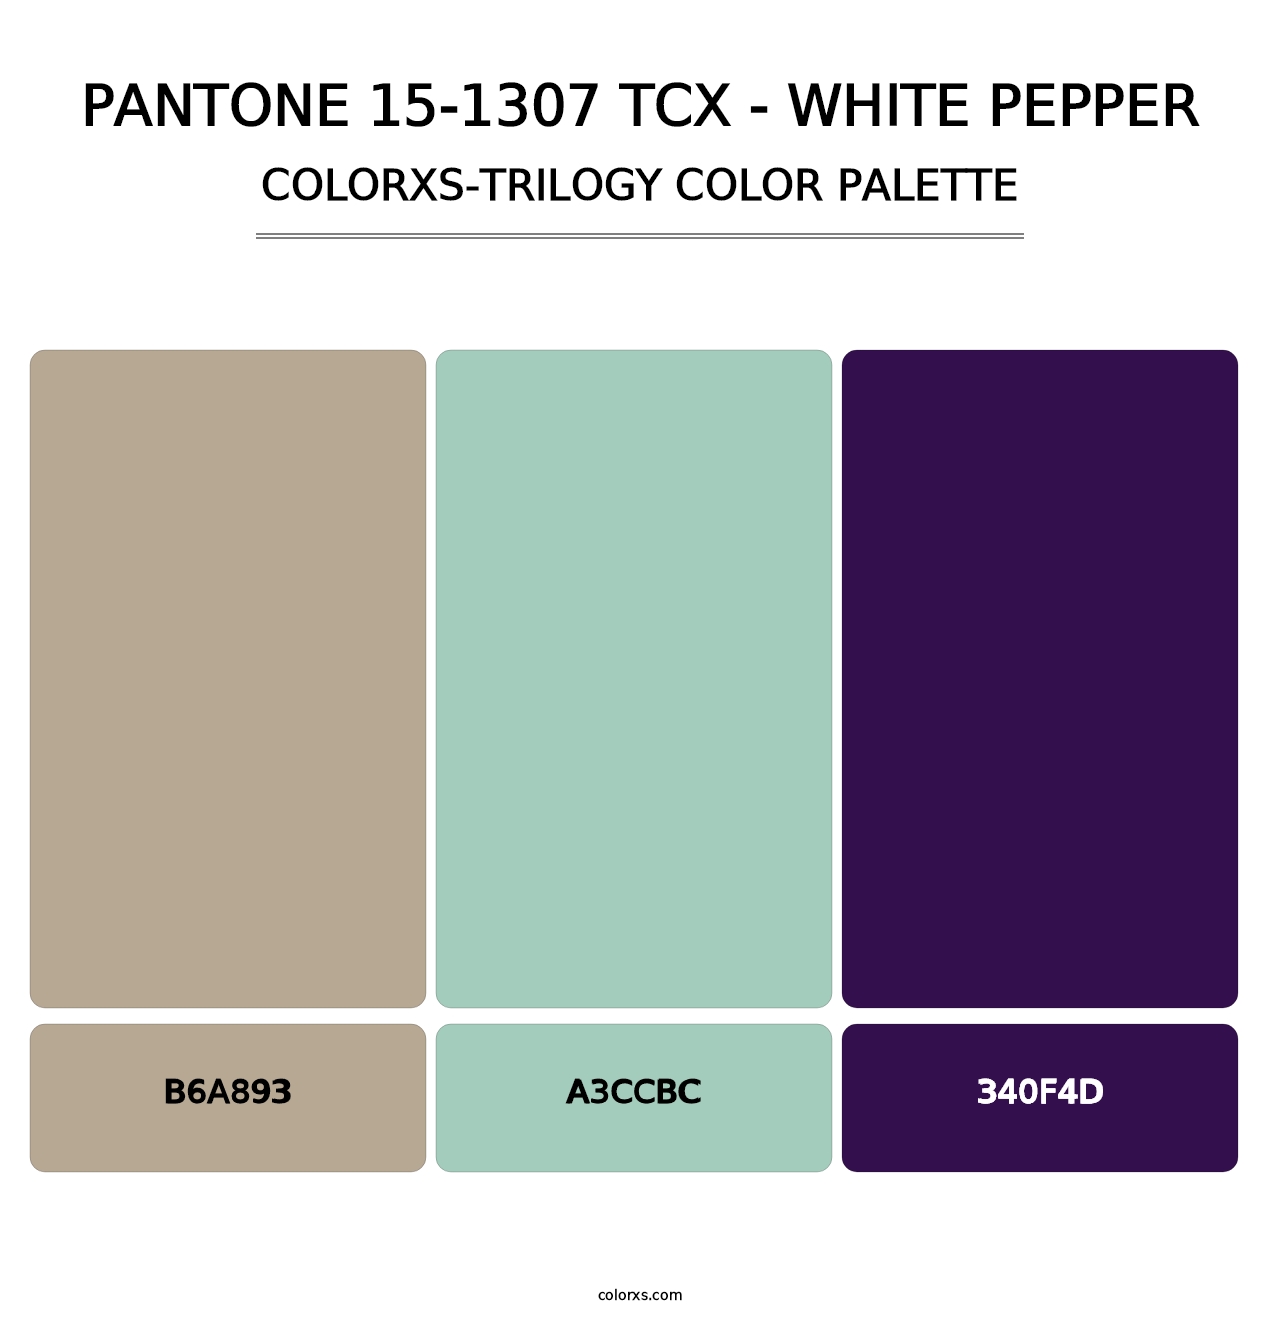 PANTONE 15-1307 TCX - White Pepper - Colorxs Trilogy Palette